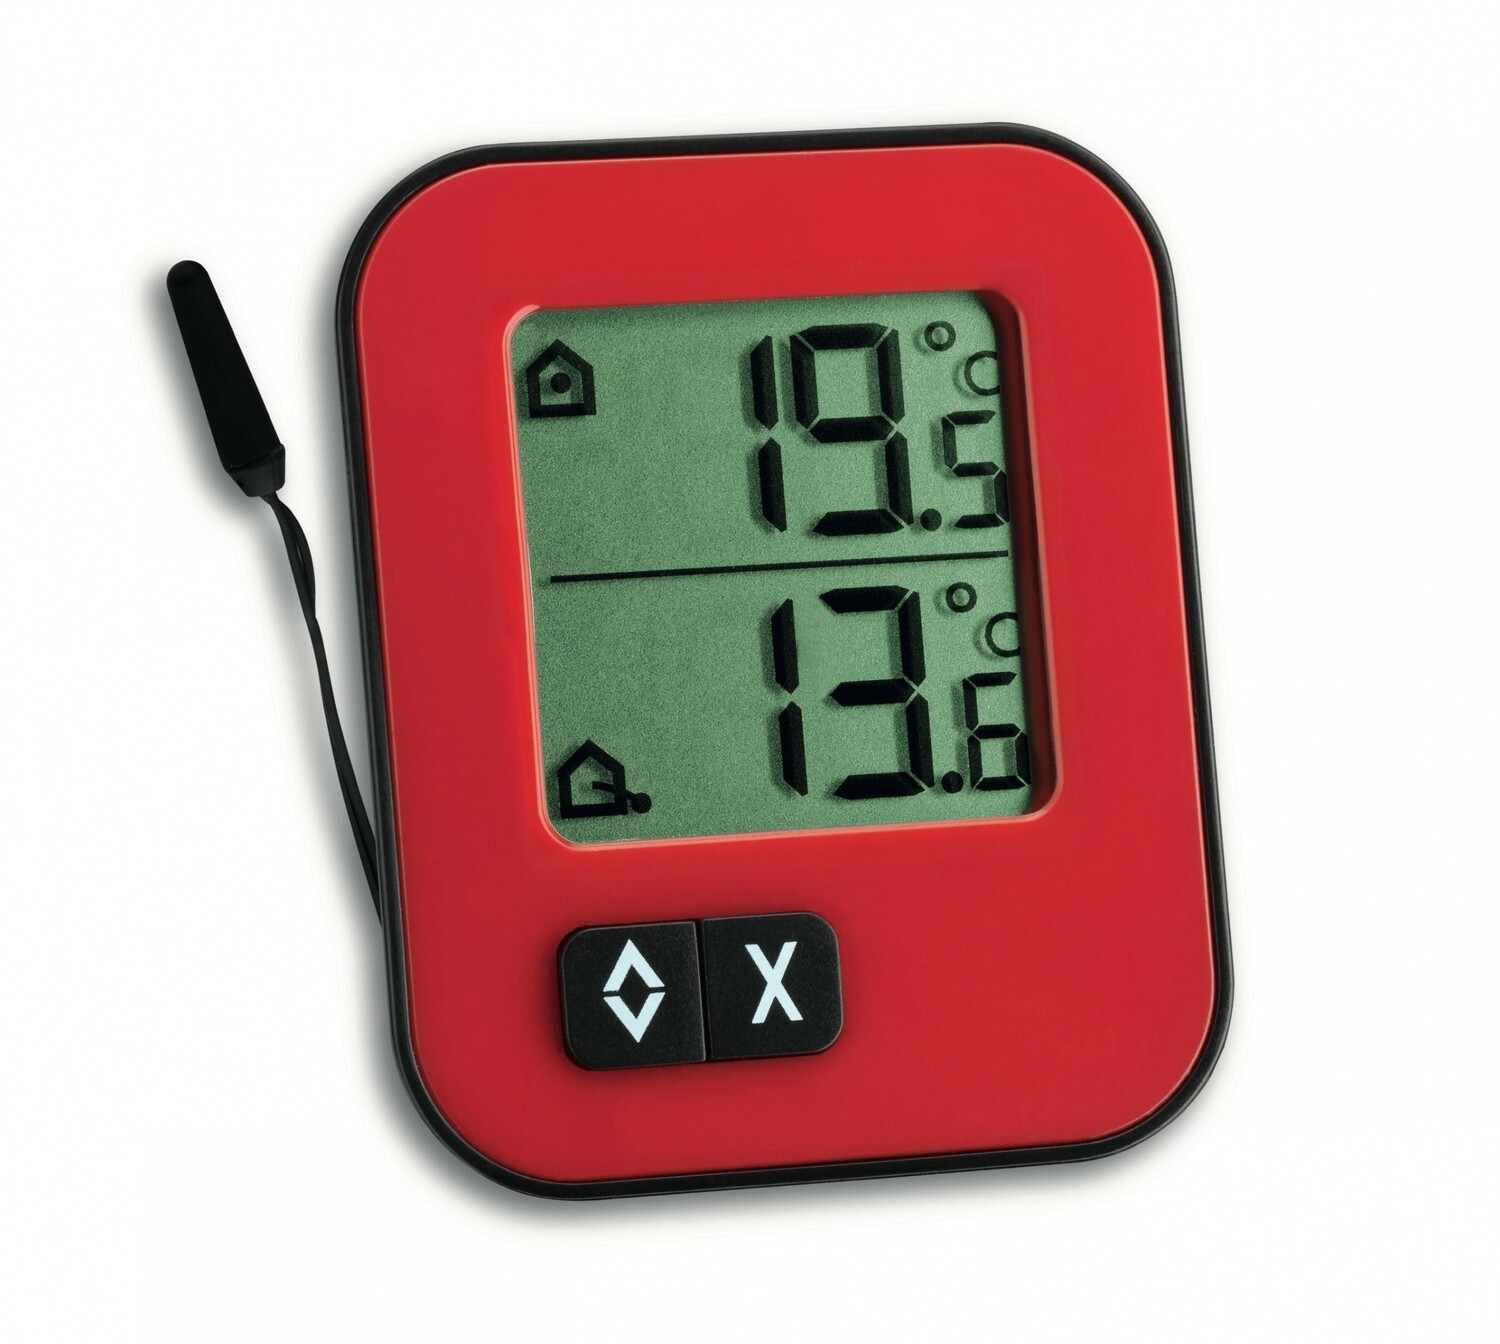 Digitales Innen-Aussen-Thermometer MOXX